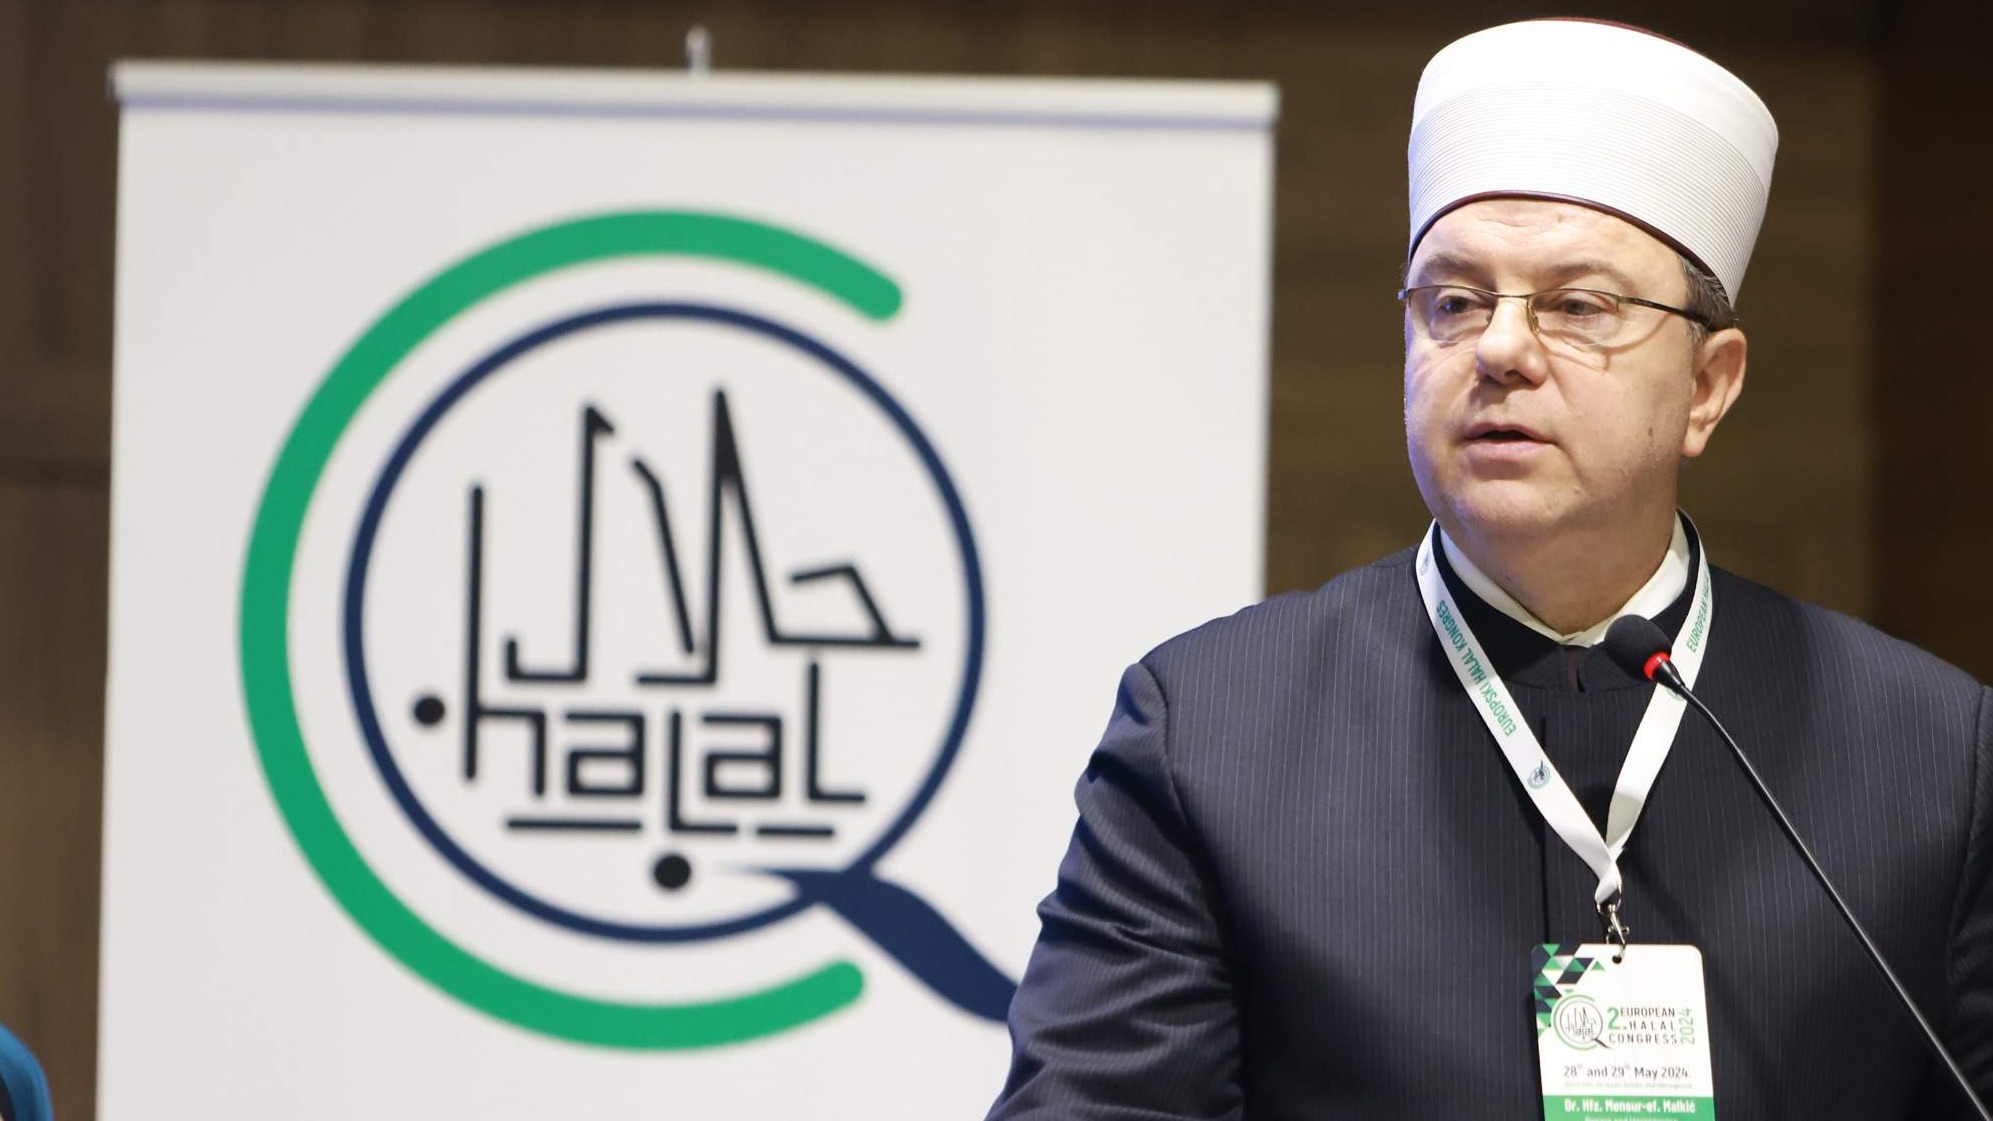 Dr. Malkić na 2. evropskom halal kongresu: Posvetiti se razvoju halal industrije i unapređenju sistema halal certificiranja